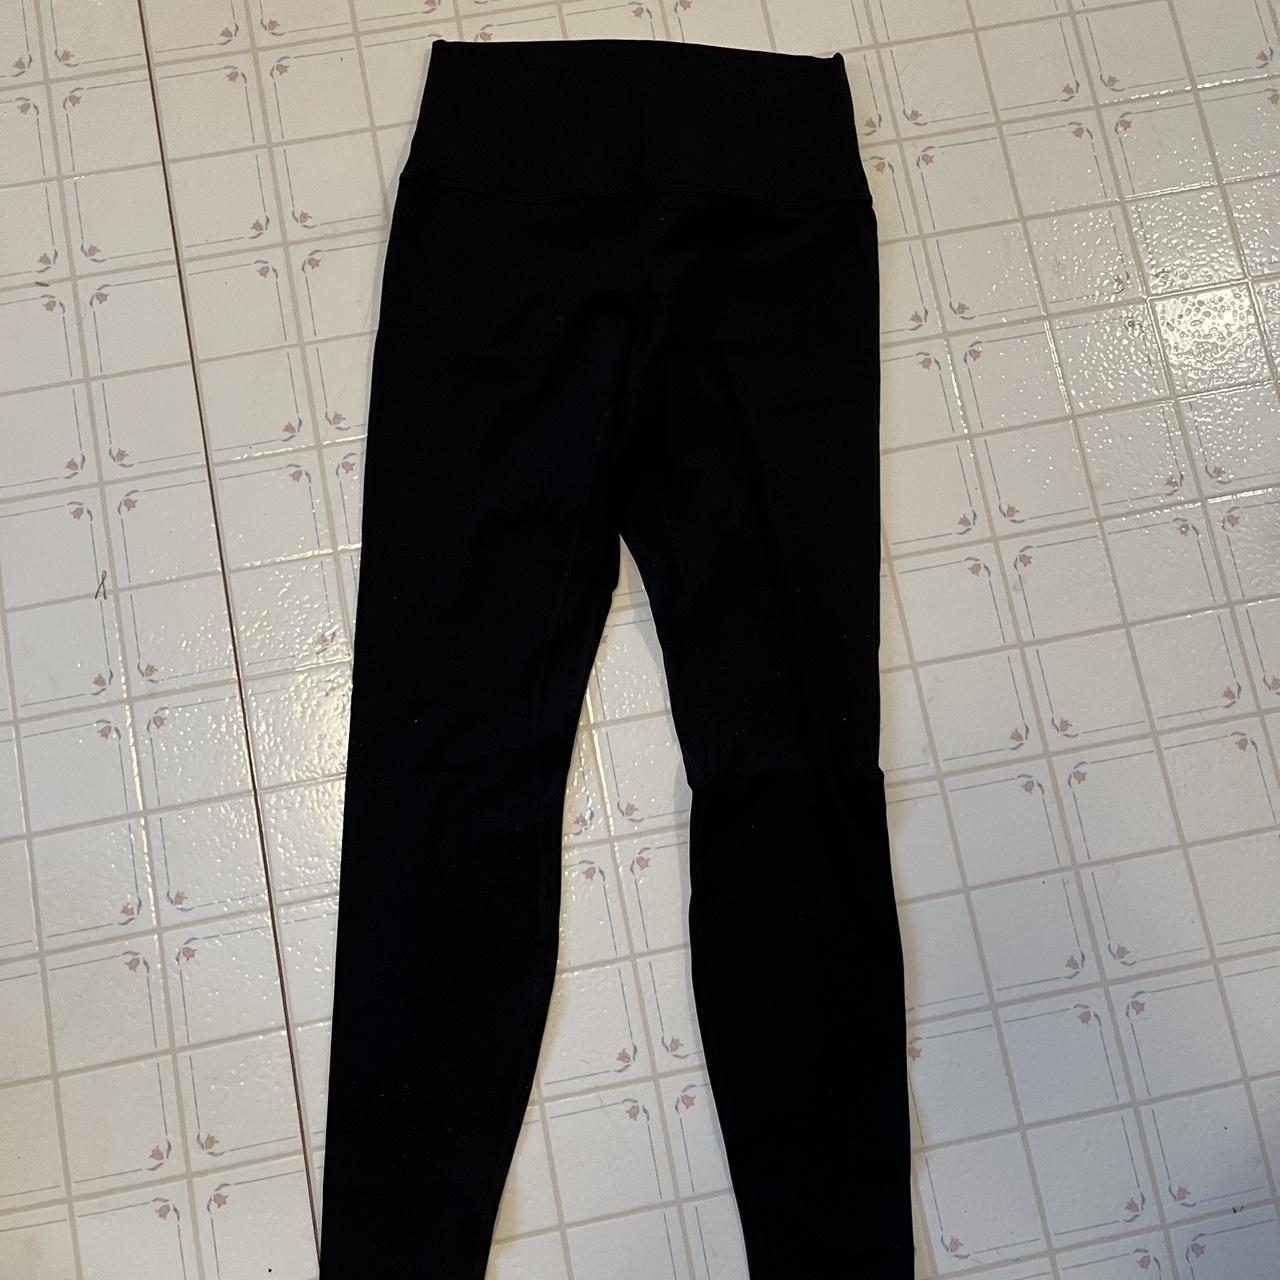 Lululemon Align Pant 28 Size 0 Dark Red - Depop